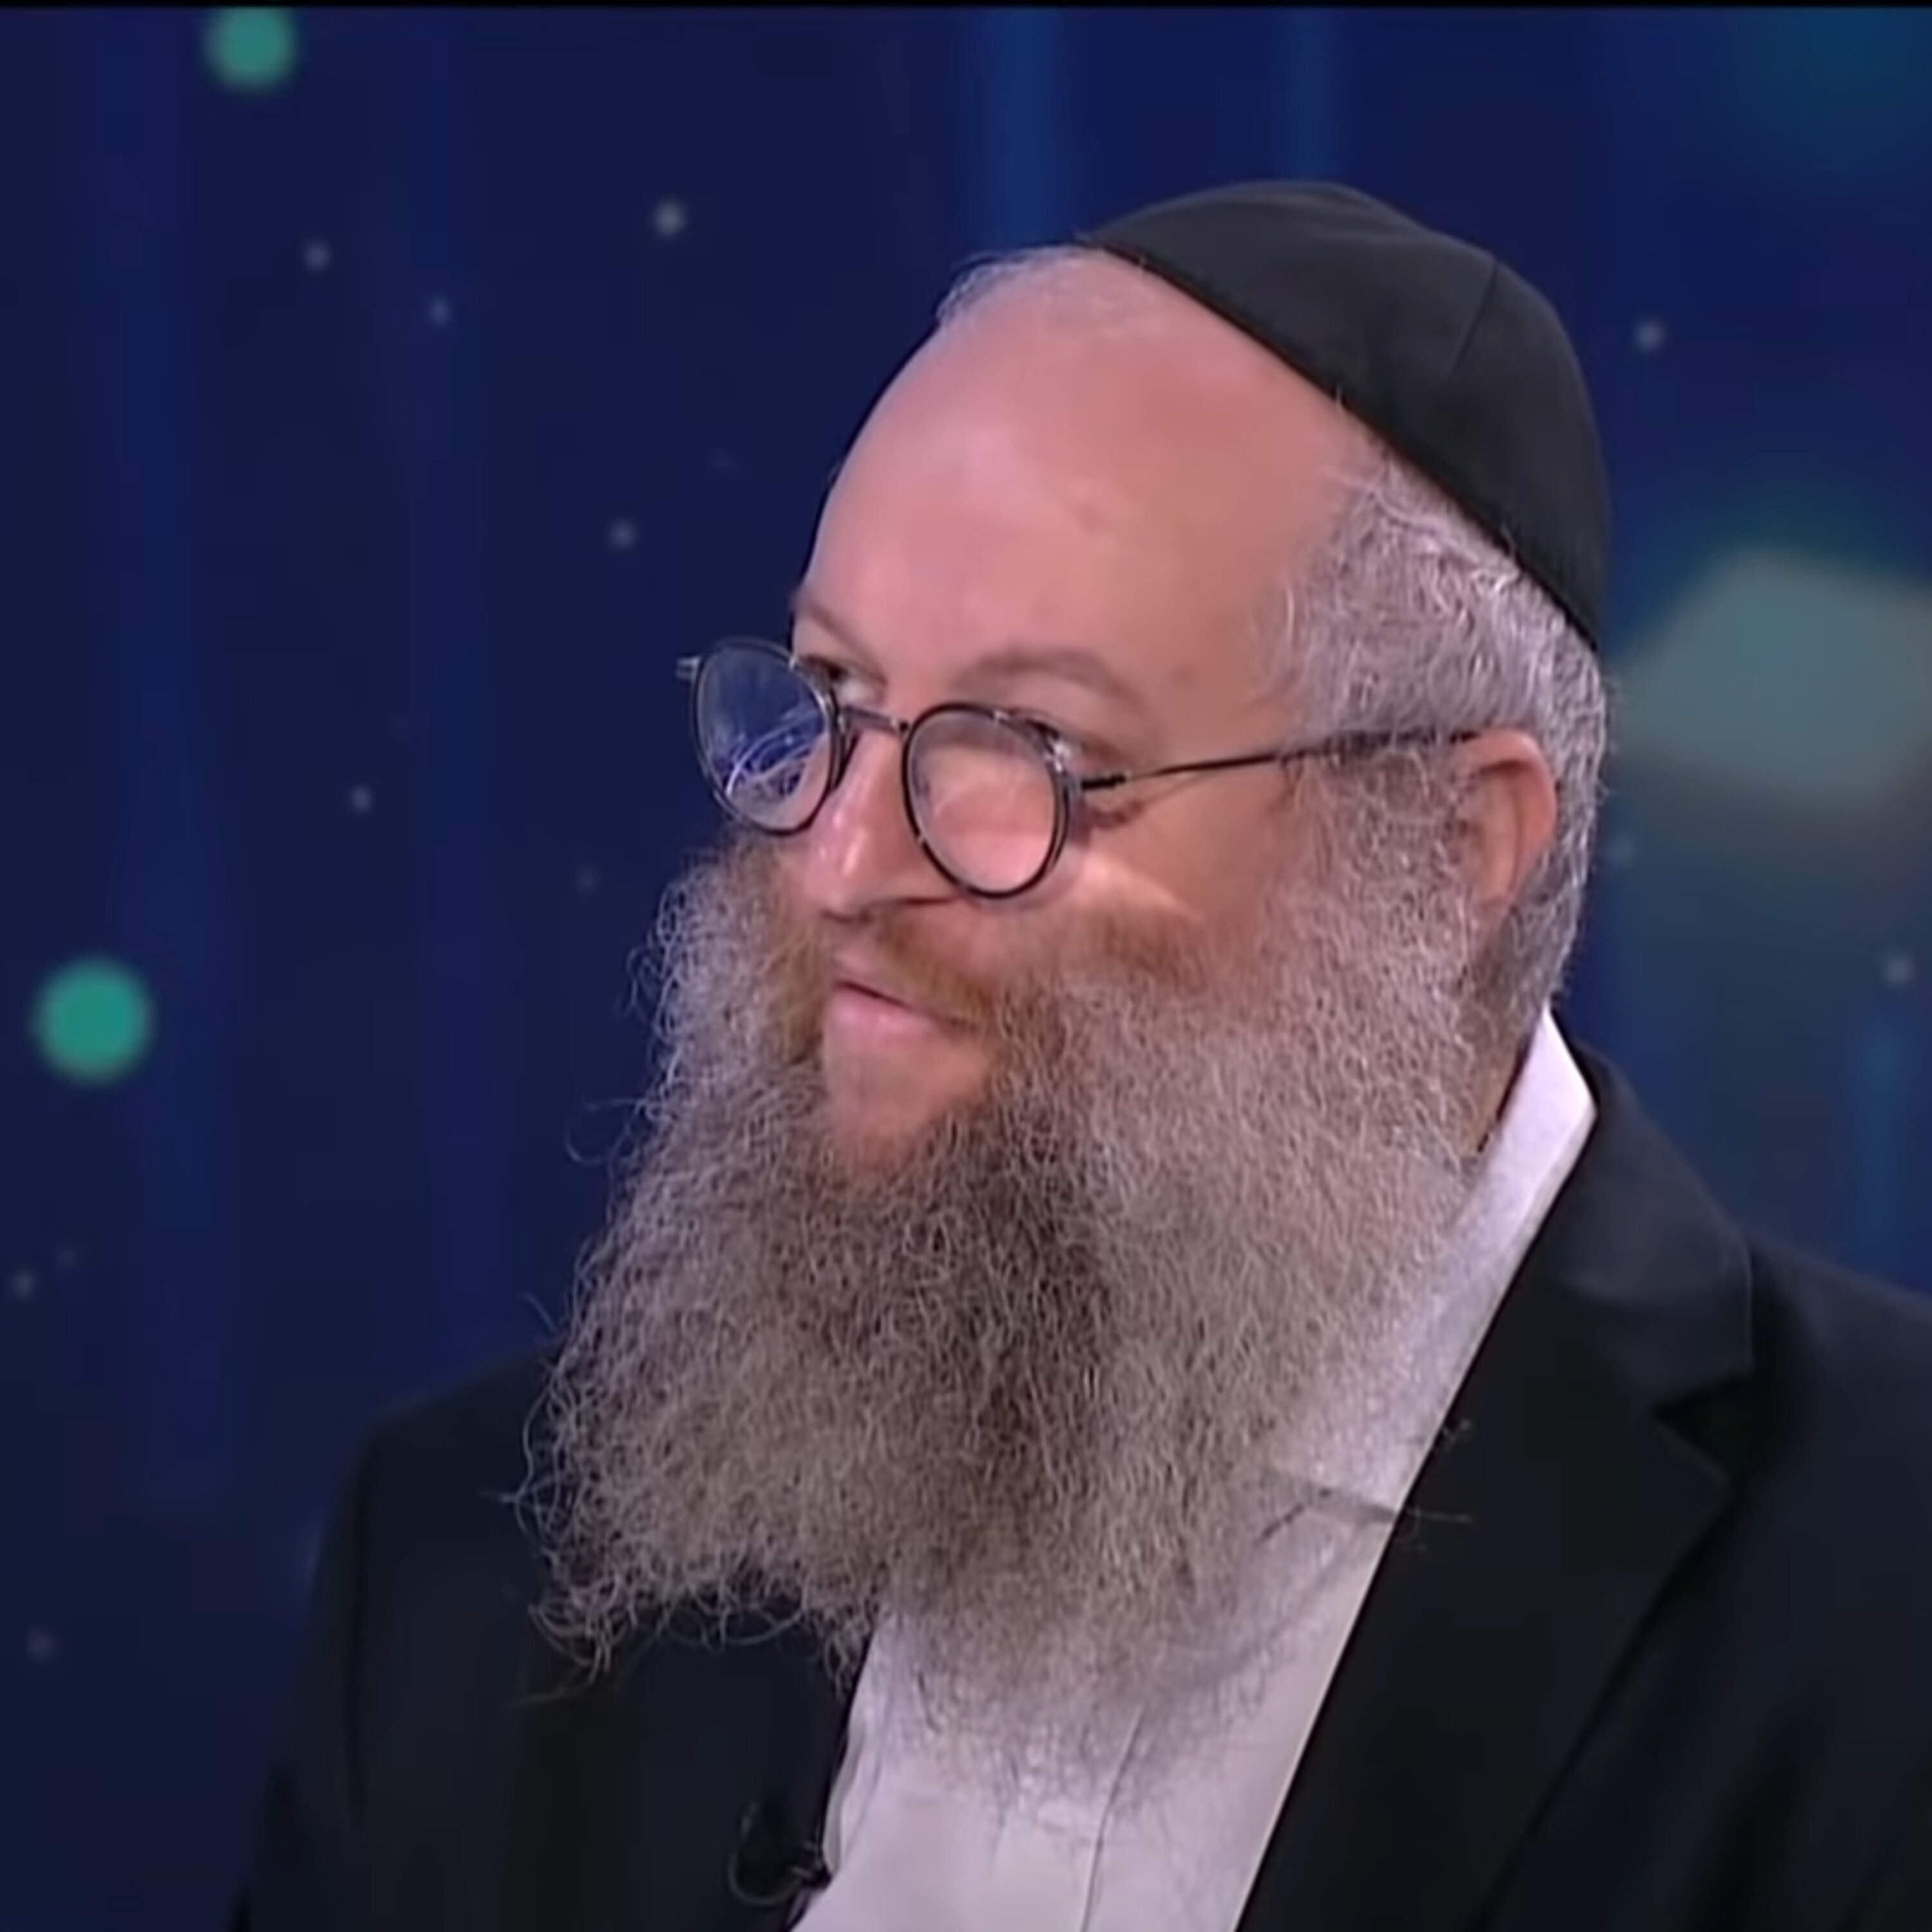 רב זפוריז'יה: ”חוששים מההפגזות, נמצאים בקשר עם הקהילות היהודיות באזור הכבוש”